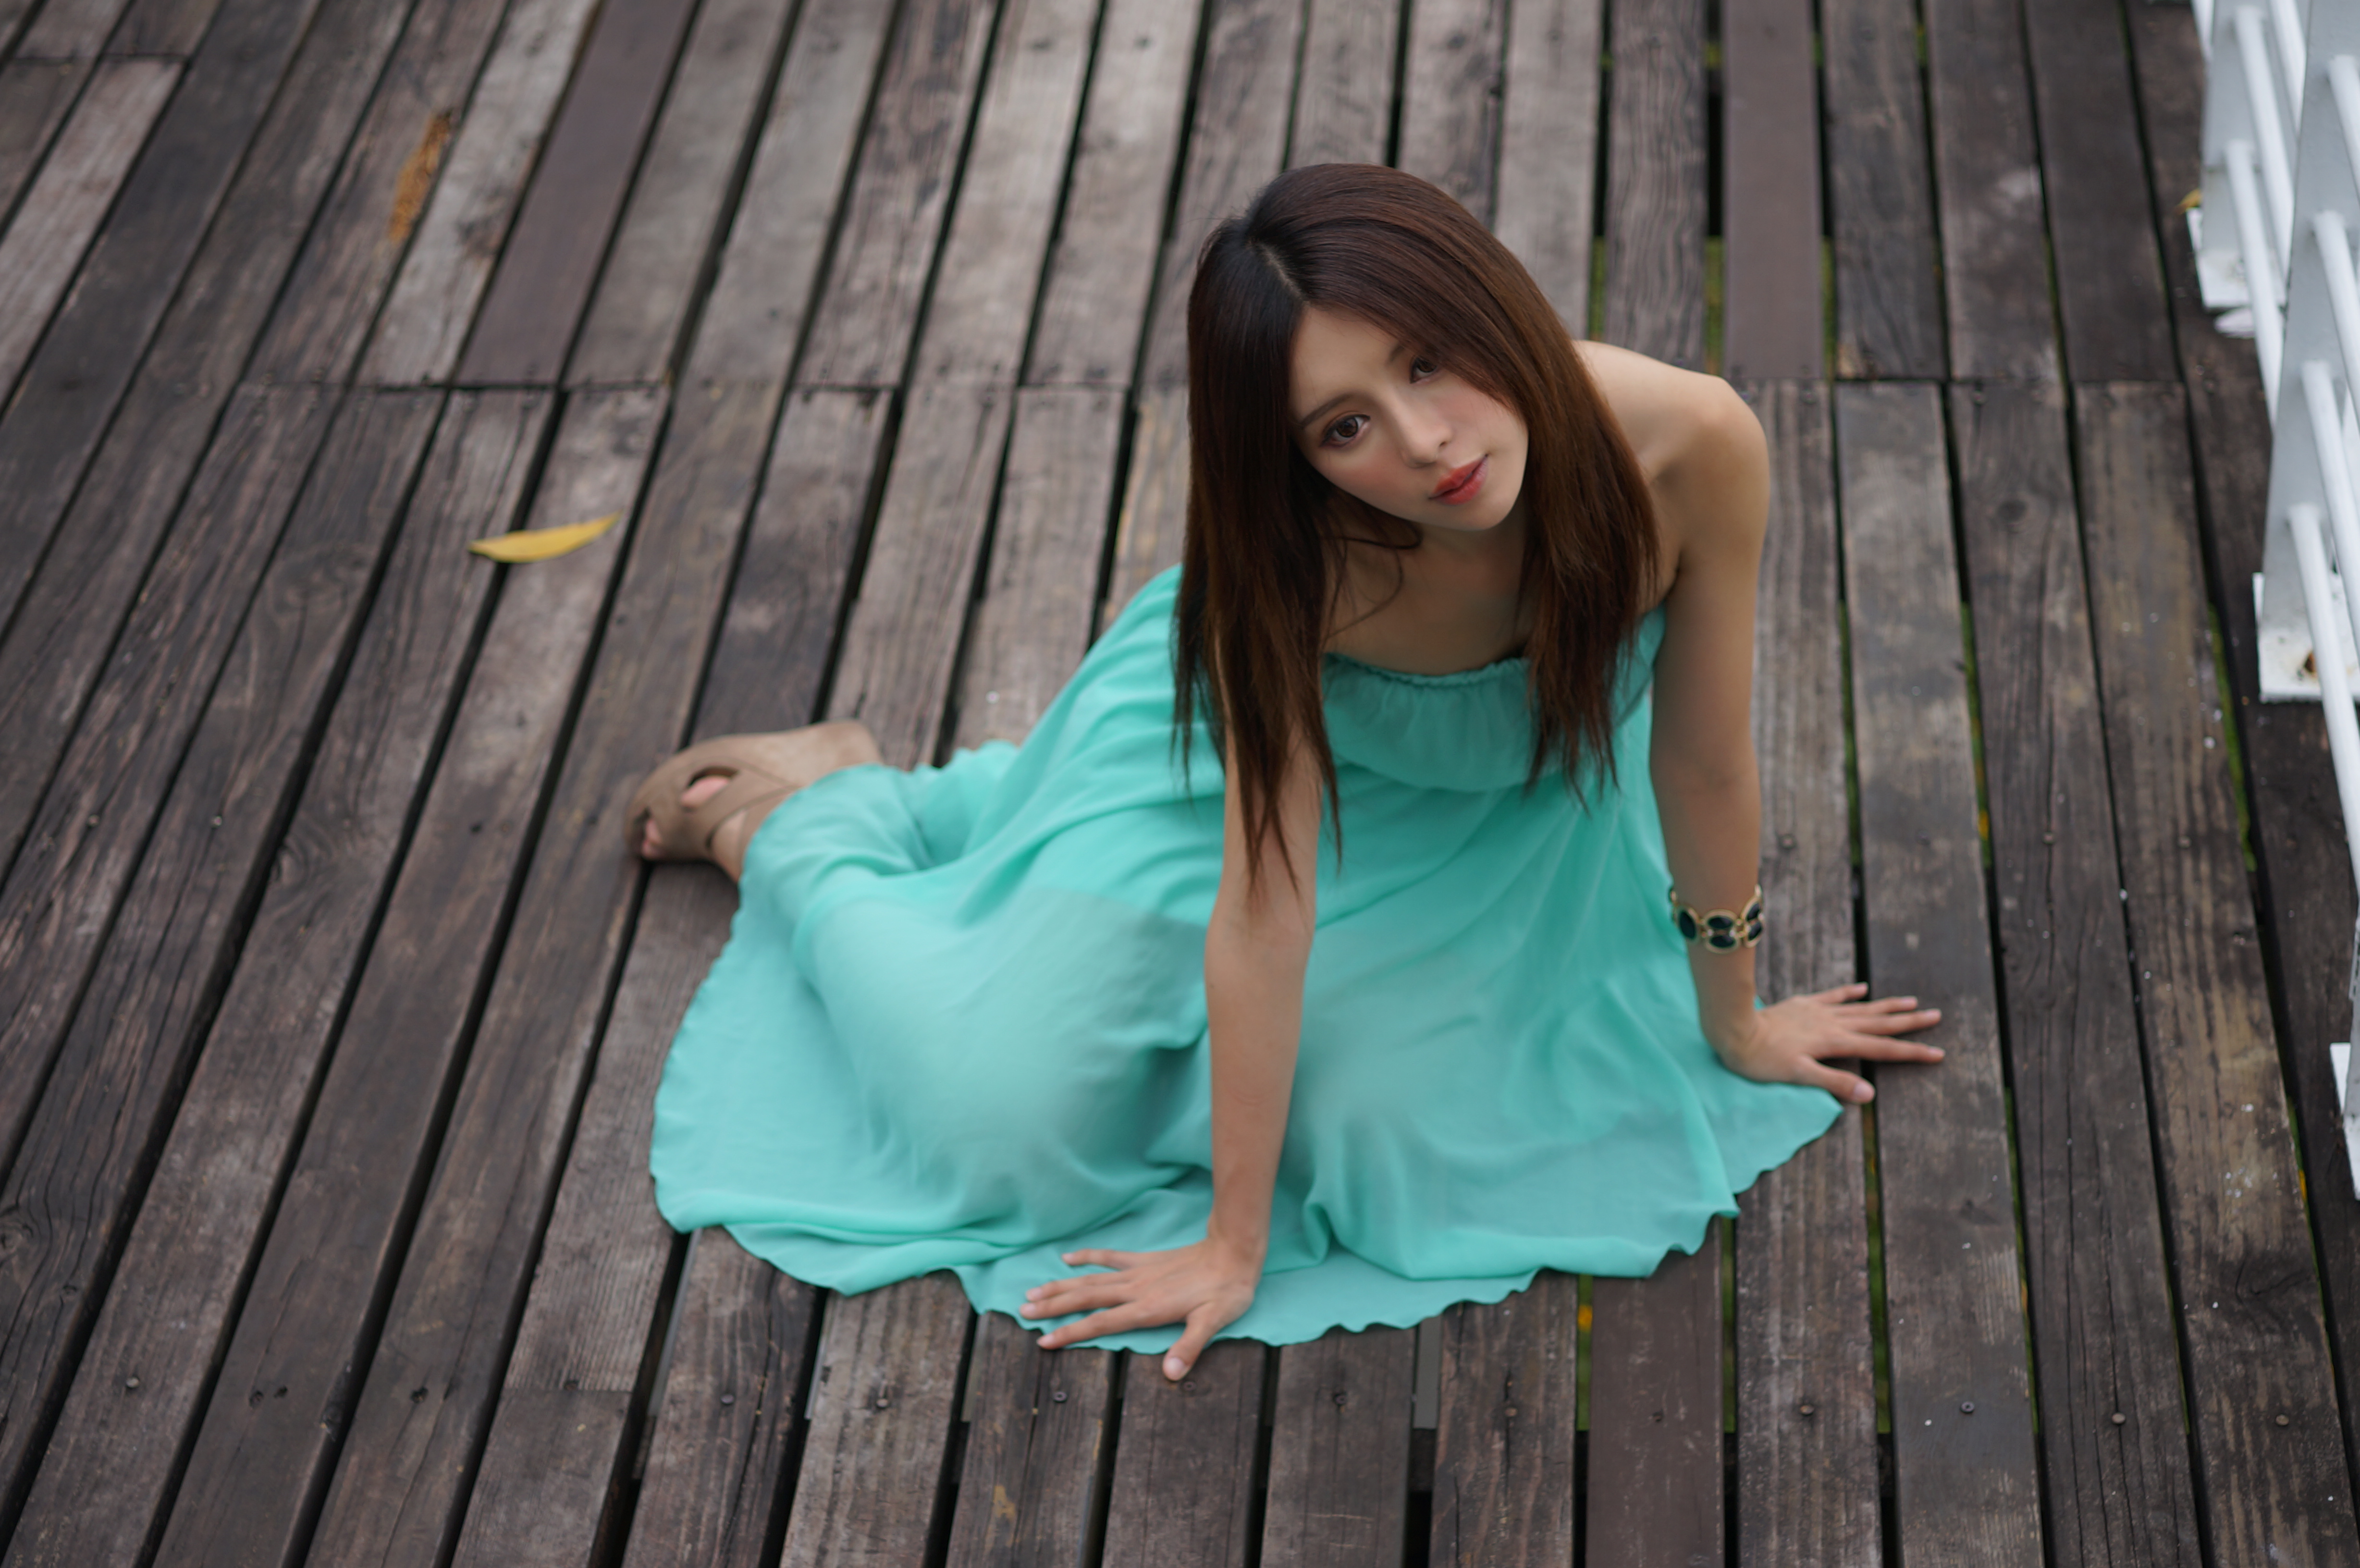 Asian Bracelet Dress Girl Hair Julie Chang Model Taiwanese Zhang Qi Jun 4912x3264